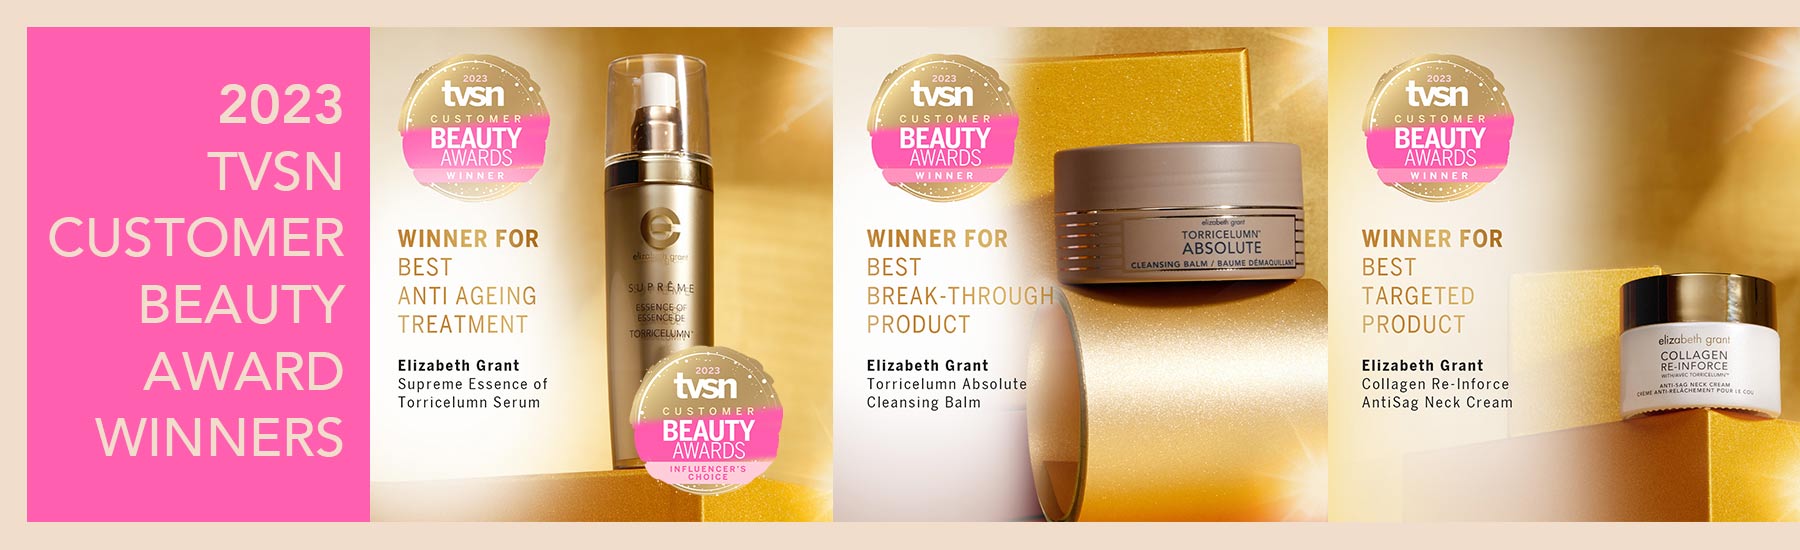 TVSN Customer Beauty Award Winners - Elizabeth Grant Skin Care